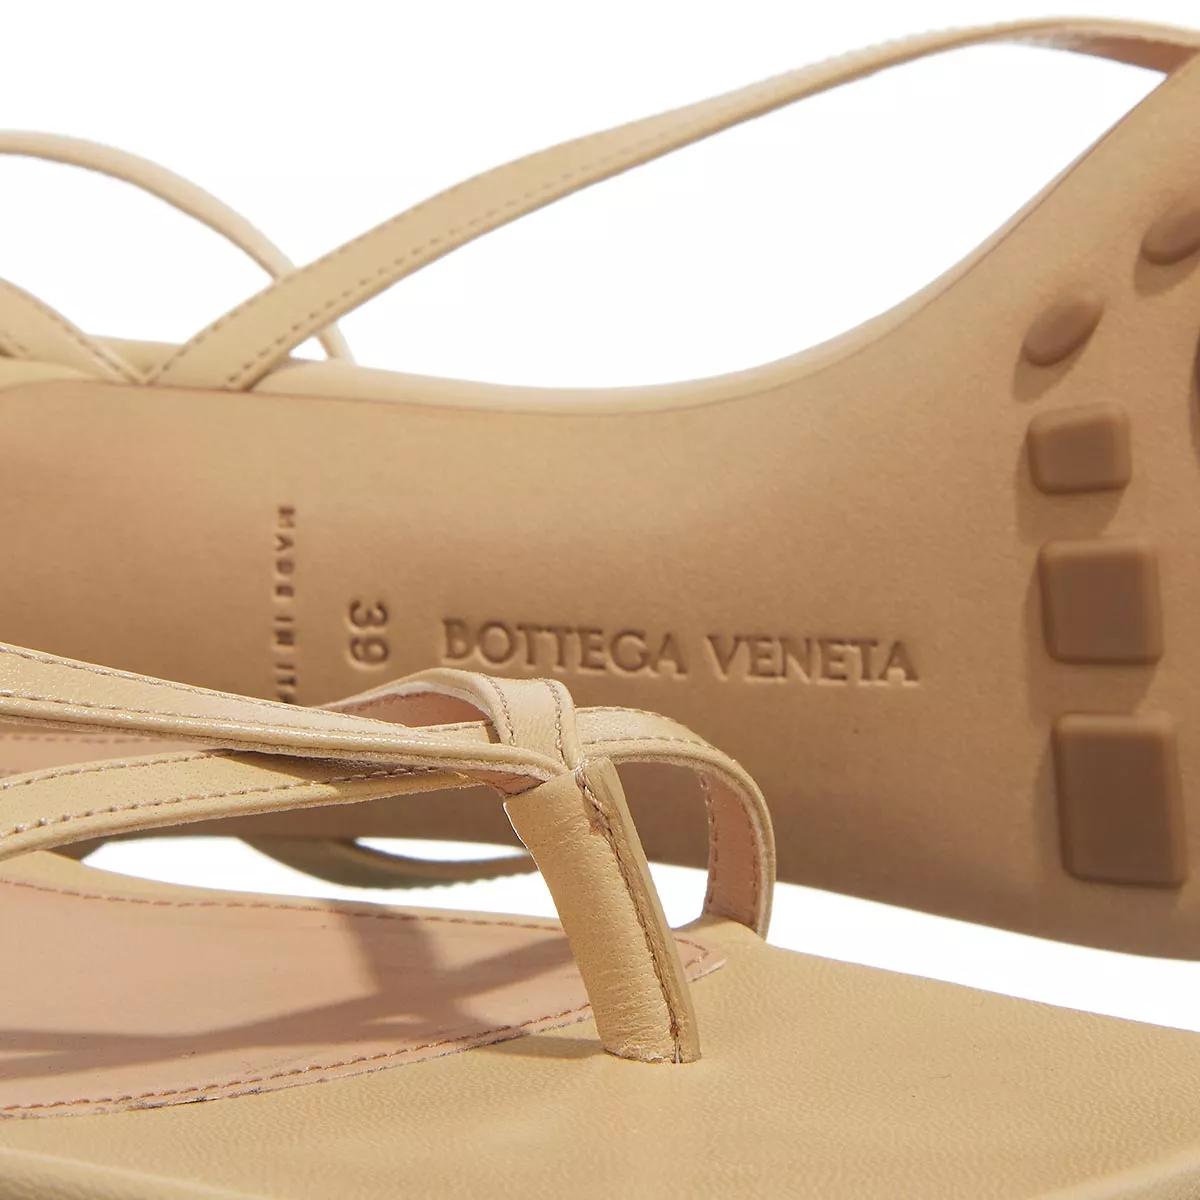 Bottega Veneta Sandalen & Sandaletten - Leather Strech Sandals - Gr. 38 (EU) - in Beige - für Damen von Bottega Veneta